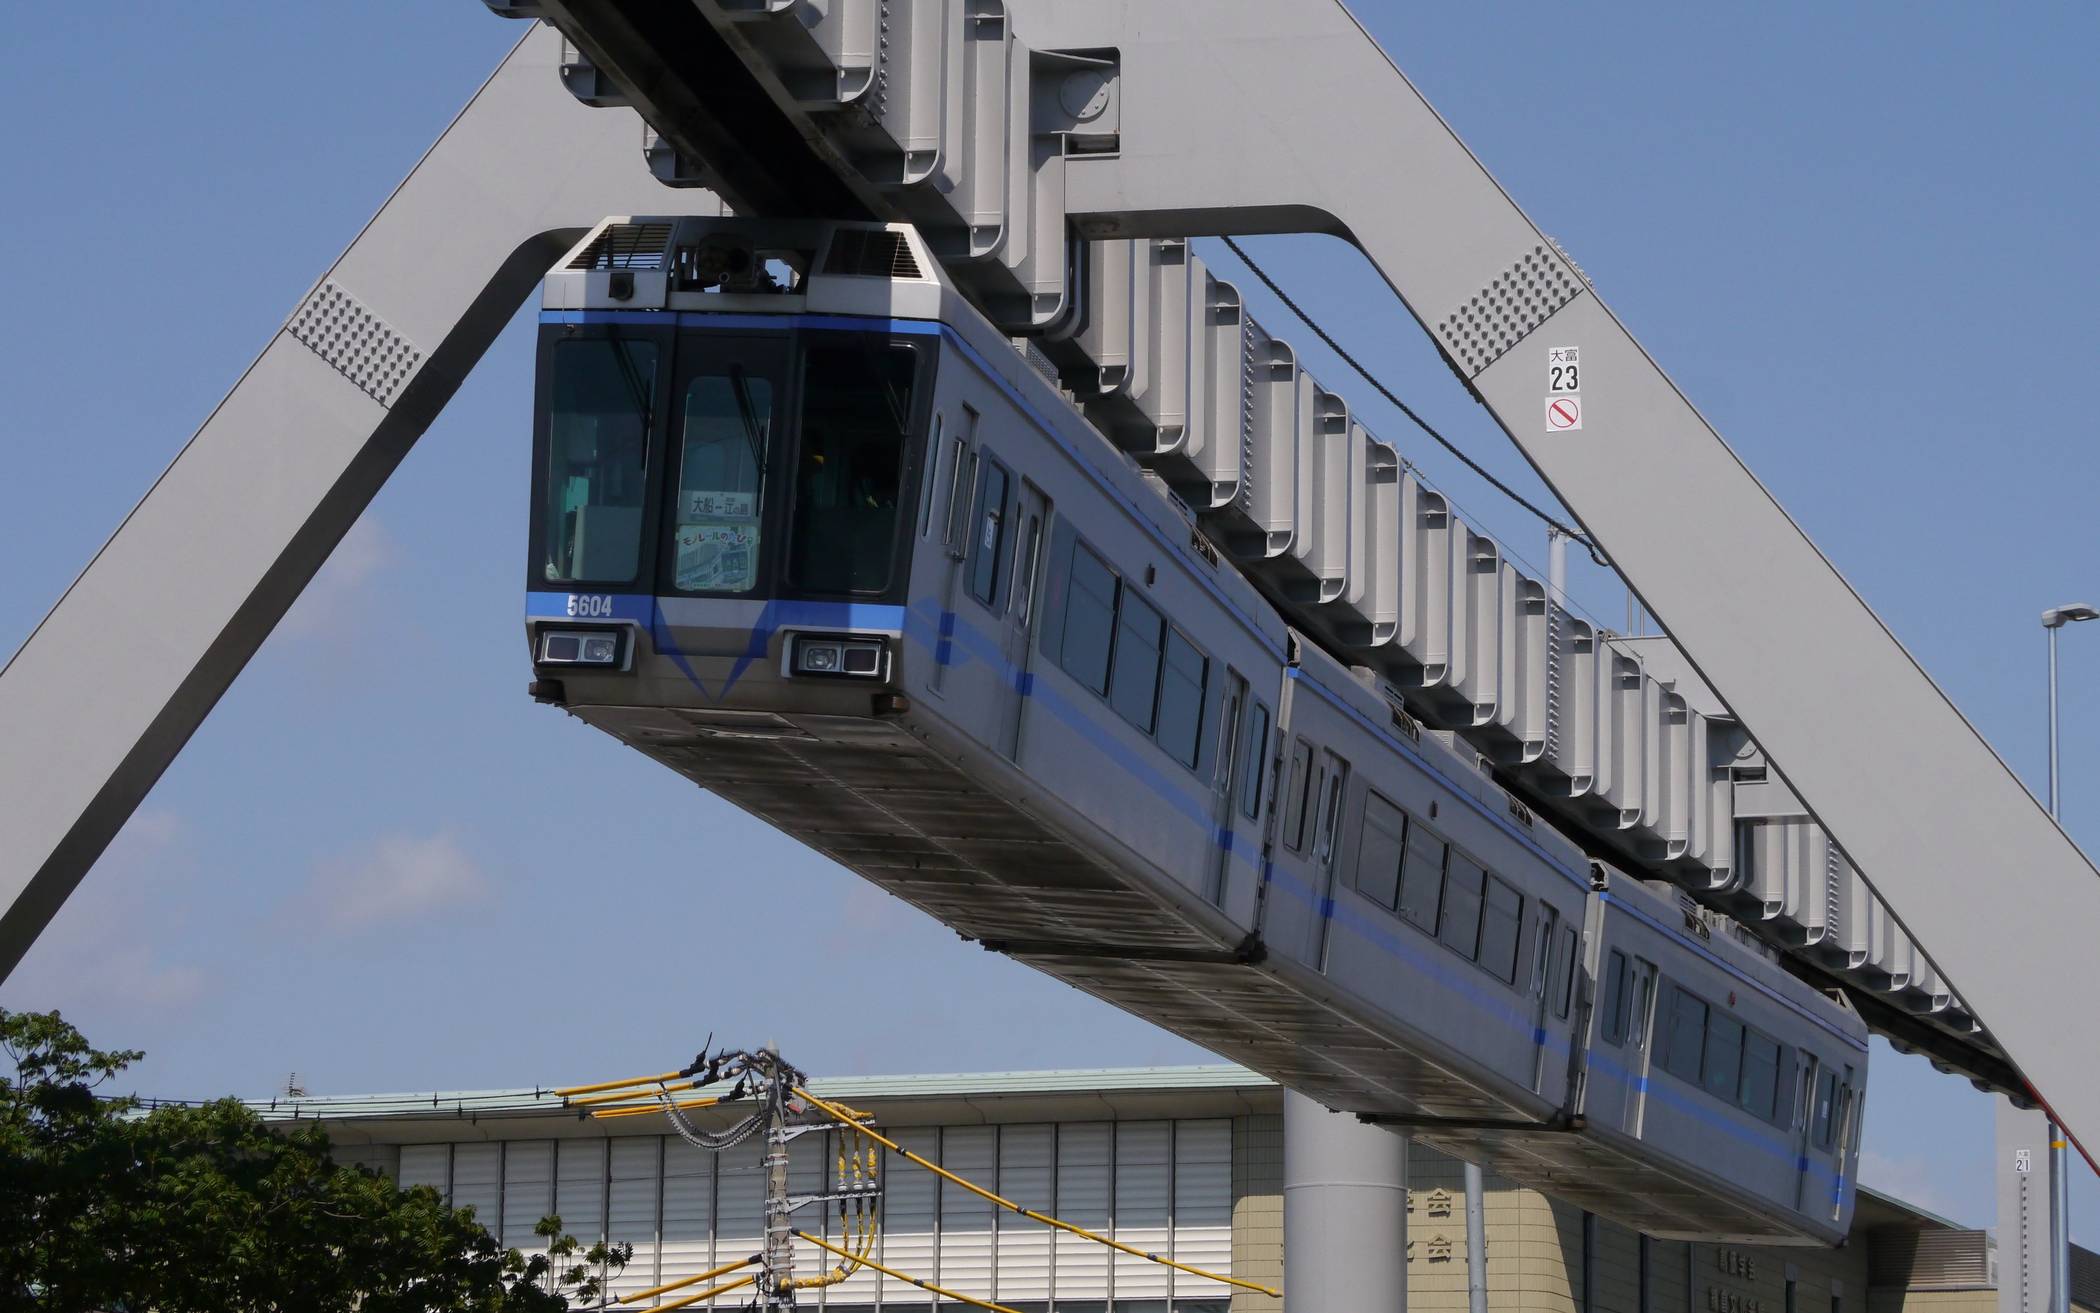  Die Shonan Monorail fährt in der japanischen Stadt Kamakura. Als „Sister Suspended Monorail“ ist sie seit 2018 mit der Wuppertaler Schwebebahn eng verbunden. 